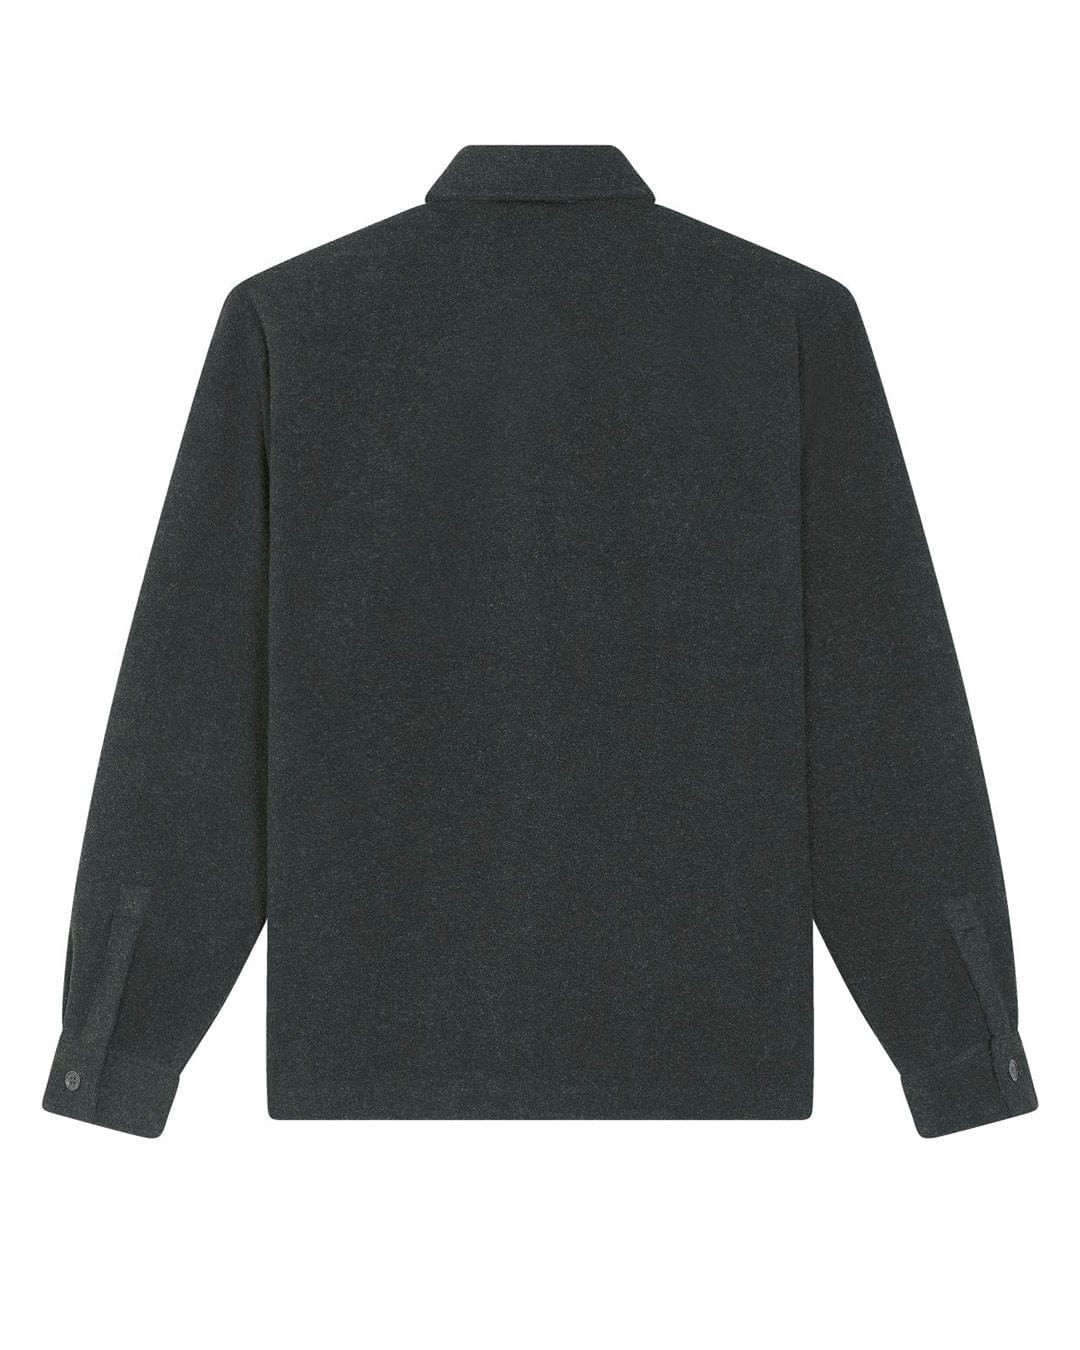 Stroncton Overshirt Jacket - Dark Heather Grey